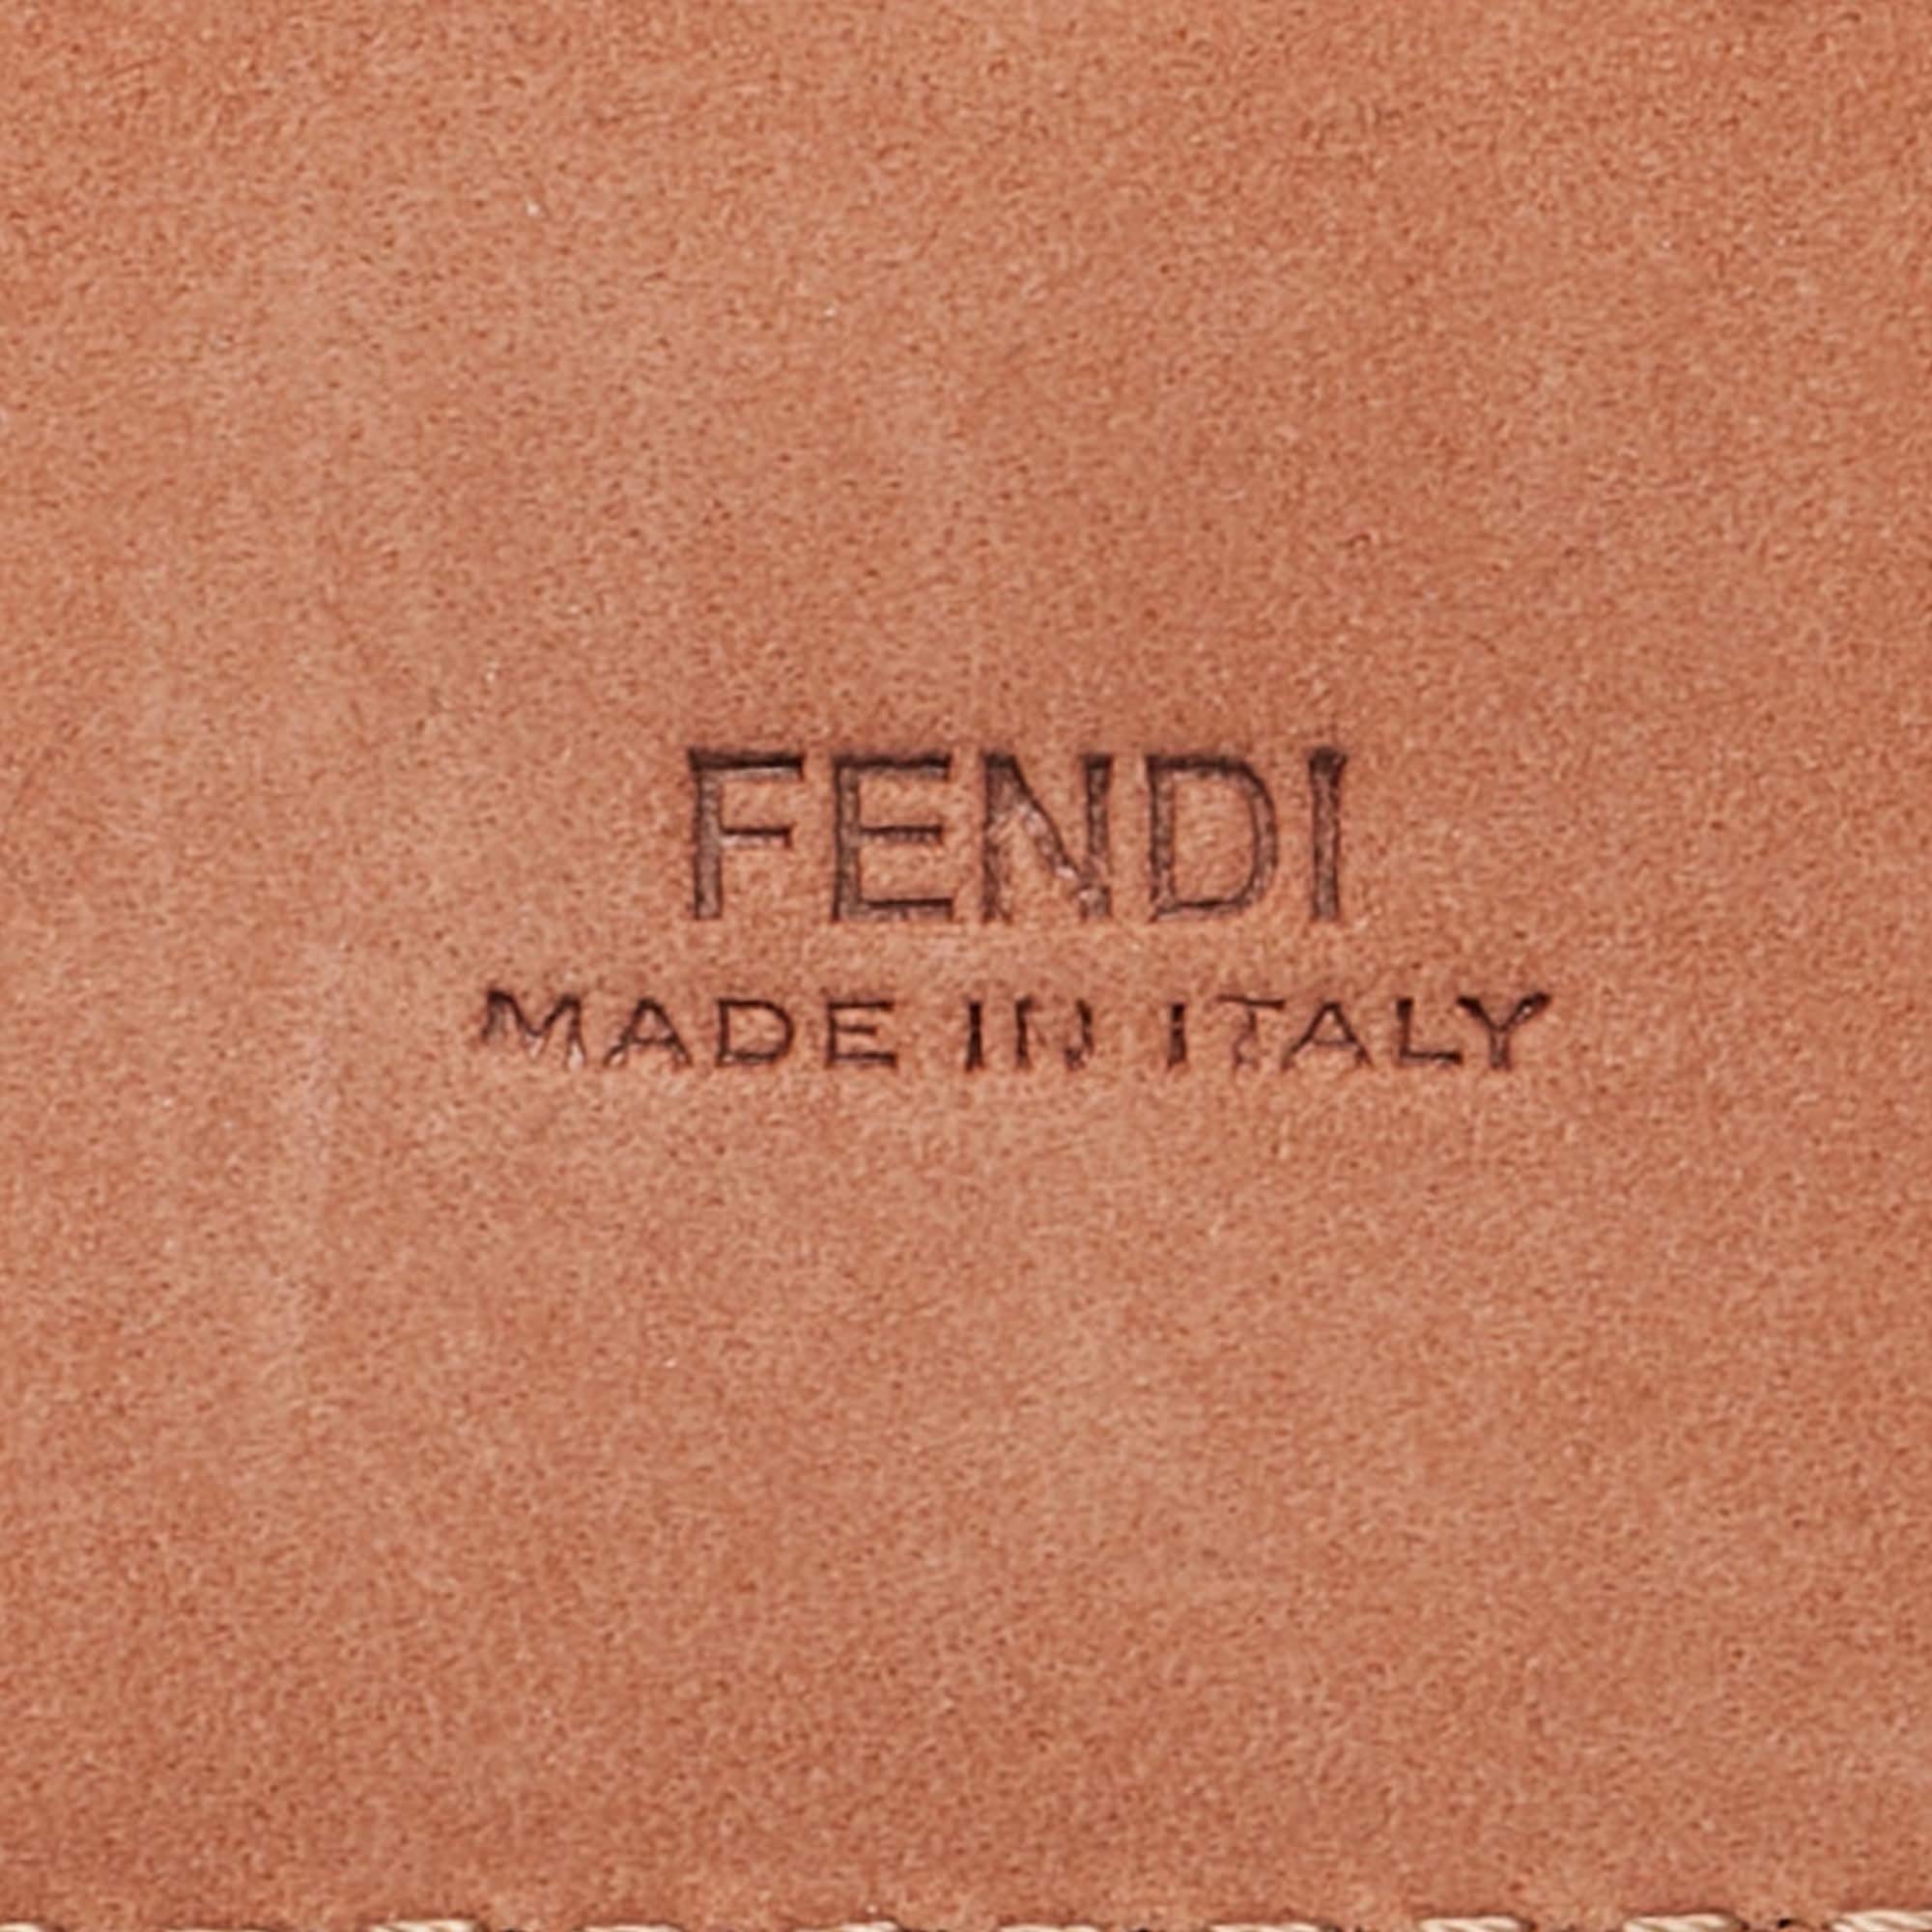 Fendi Multicolor Printed Leather Studded Belt 85 CM For Sale 2